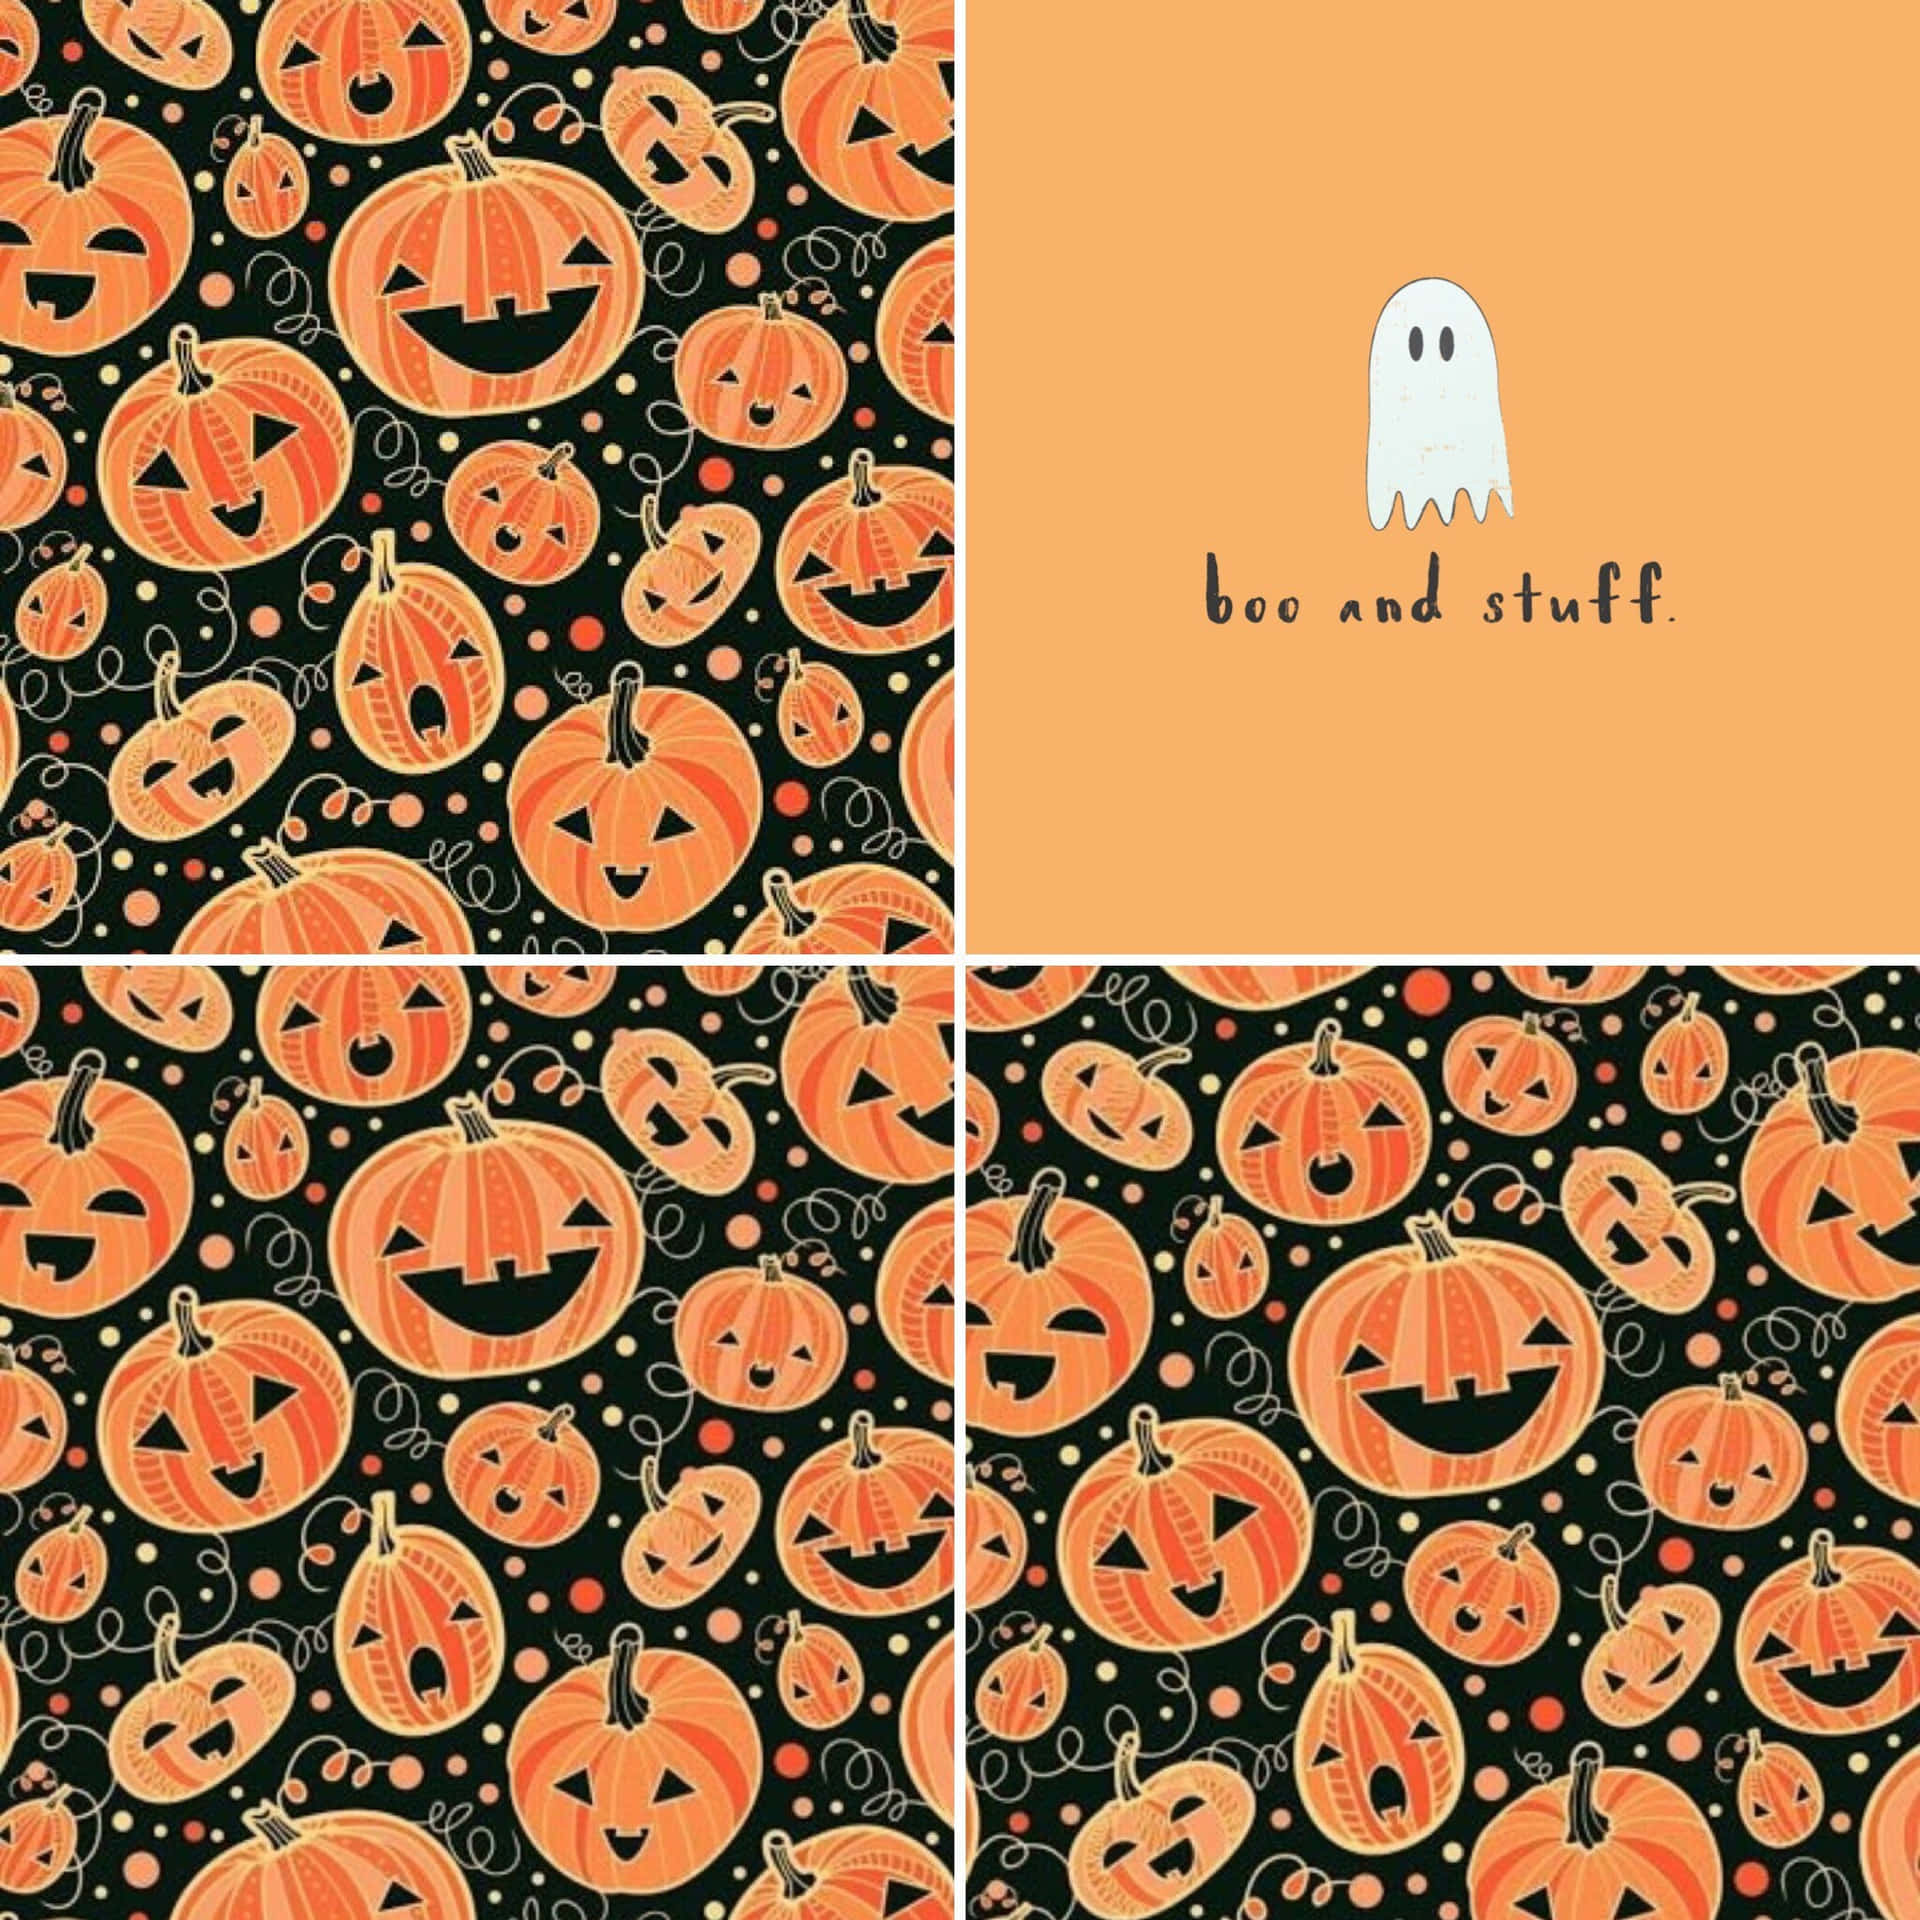 Vorsicht!boo And Stuff Ist Ihr One-stop-shop Für All Ihre Halloween-bedürfnisse! Wallpaper